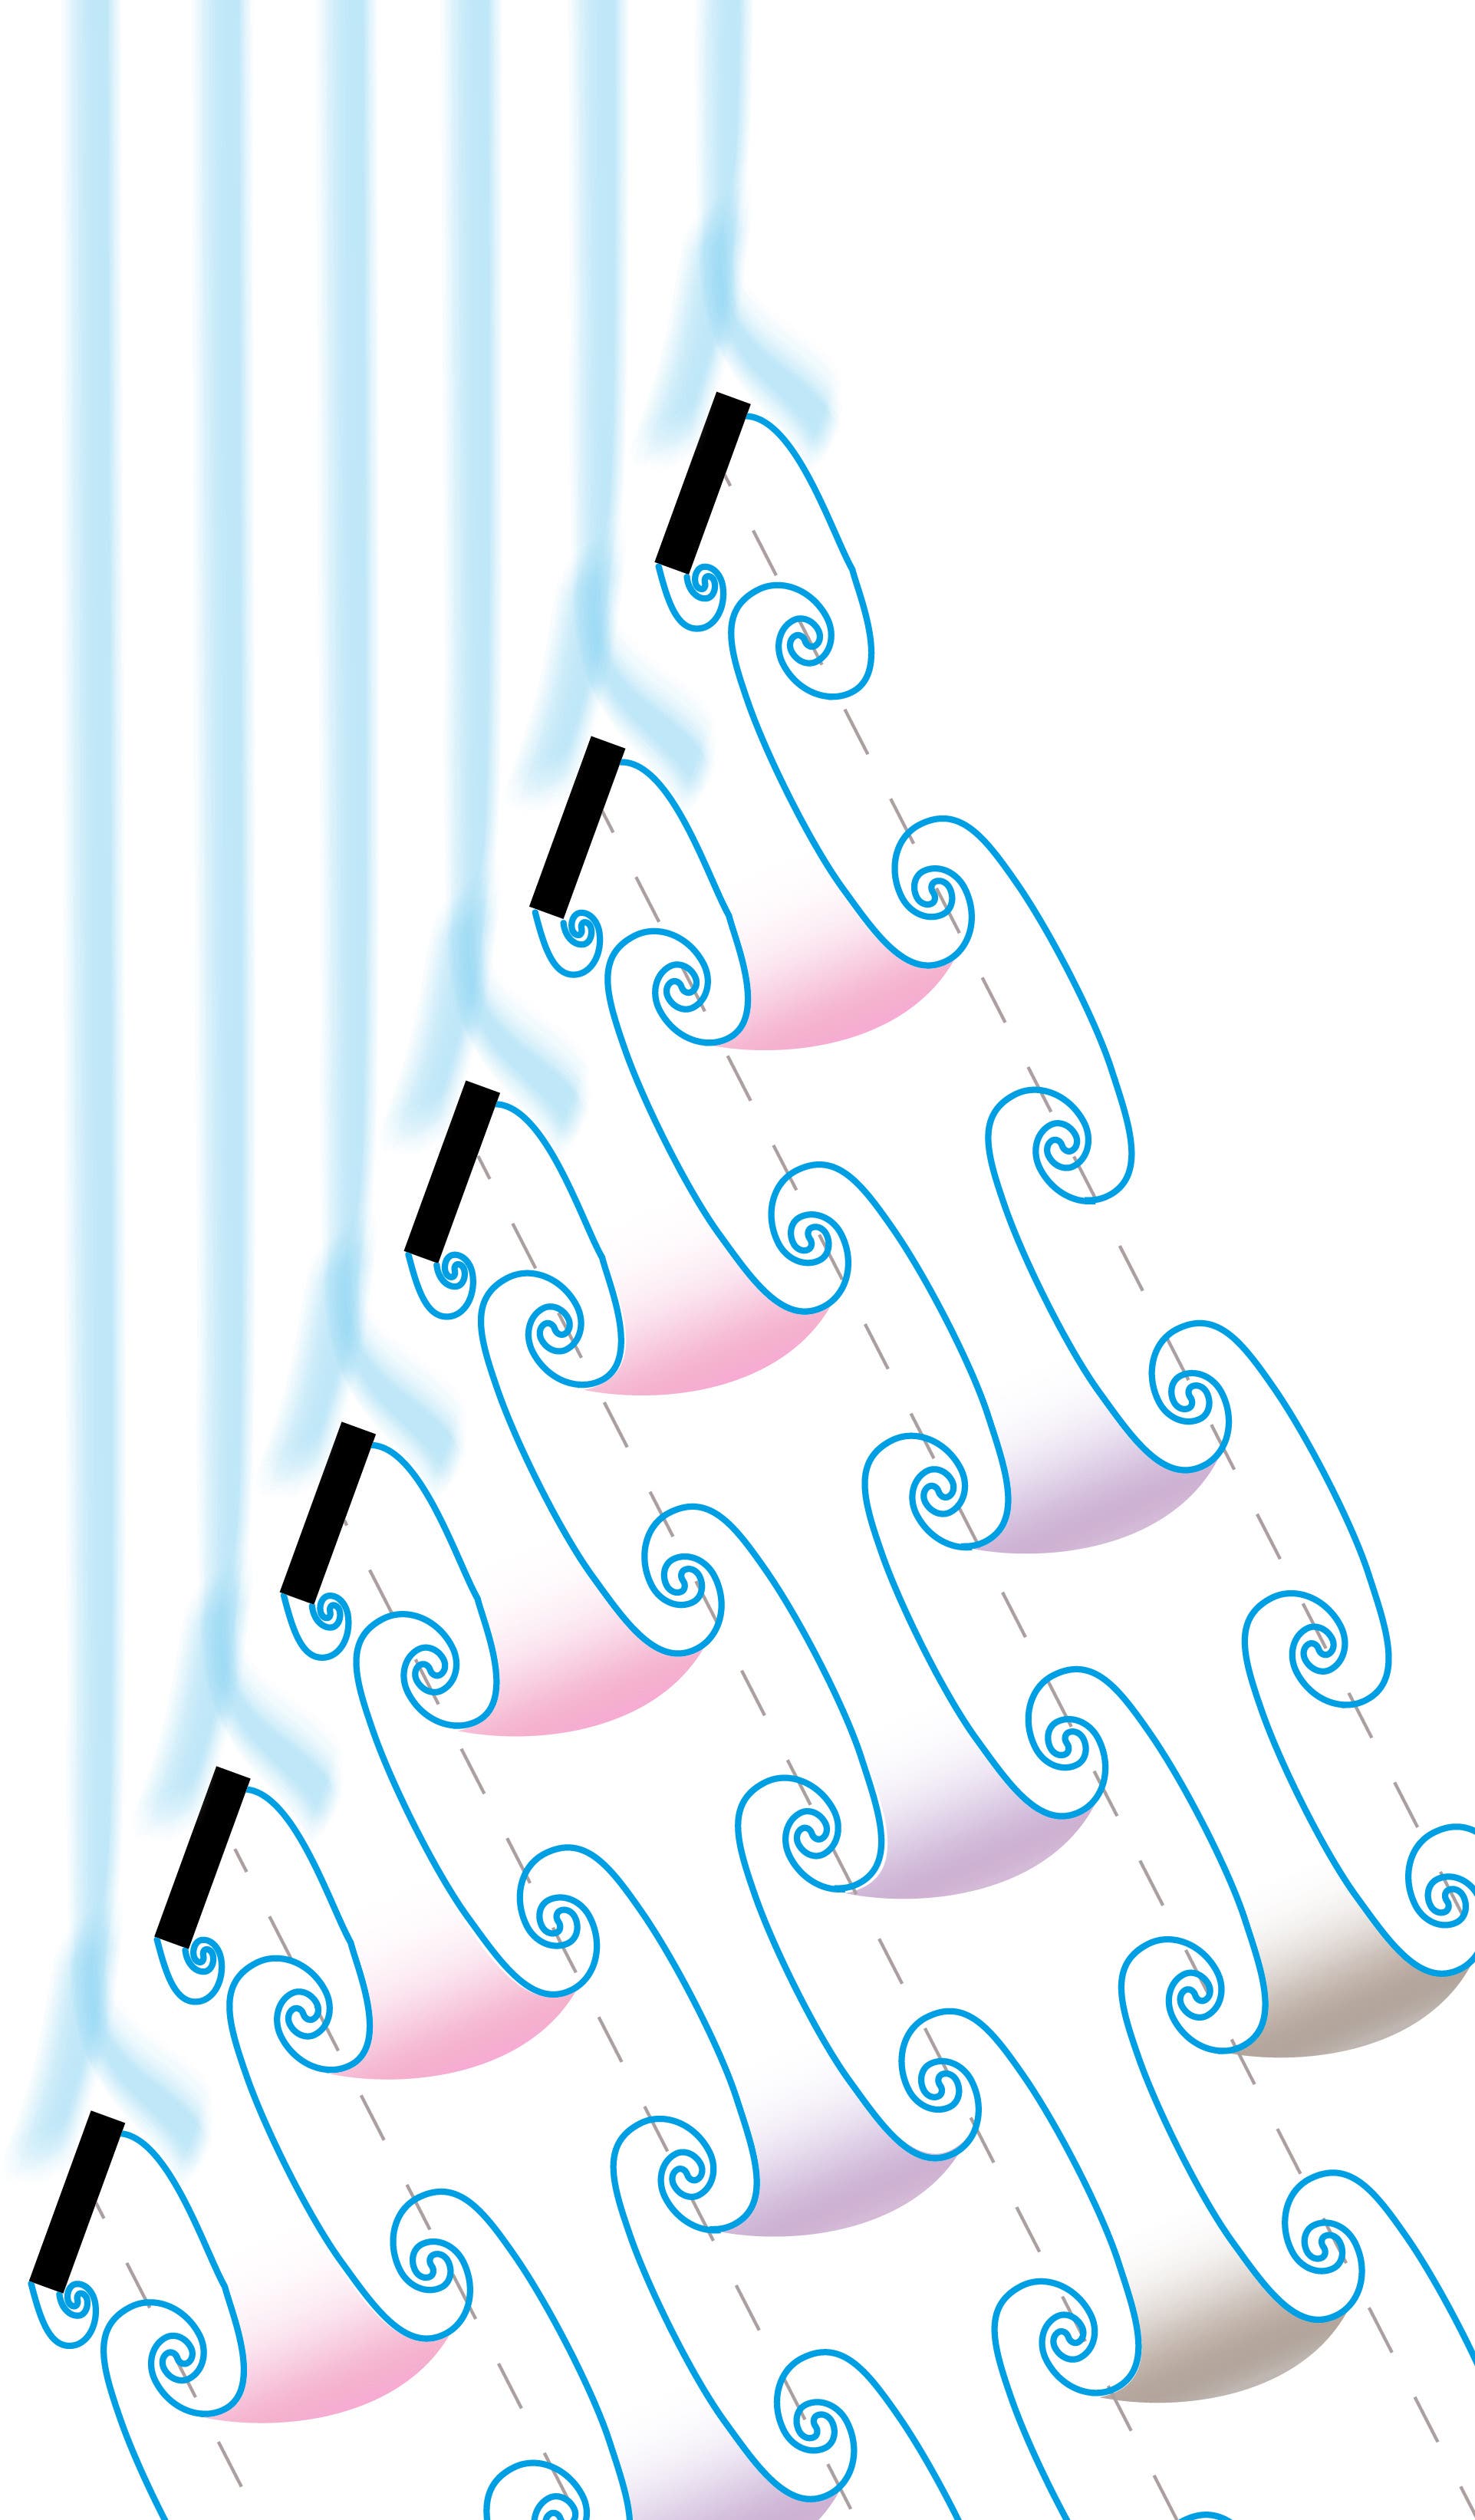 Schematische Darstellung der Wirbelablösung von einer gelochten Wandung. Gekoppelte Wirbelpaare des gleichen Entstehungszyklus sind gleichfarbig markiert.